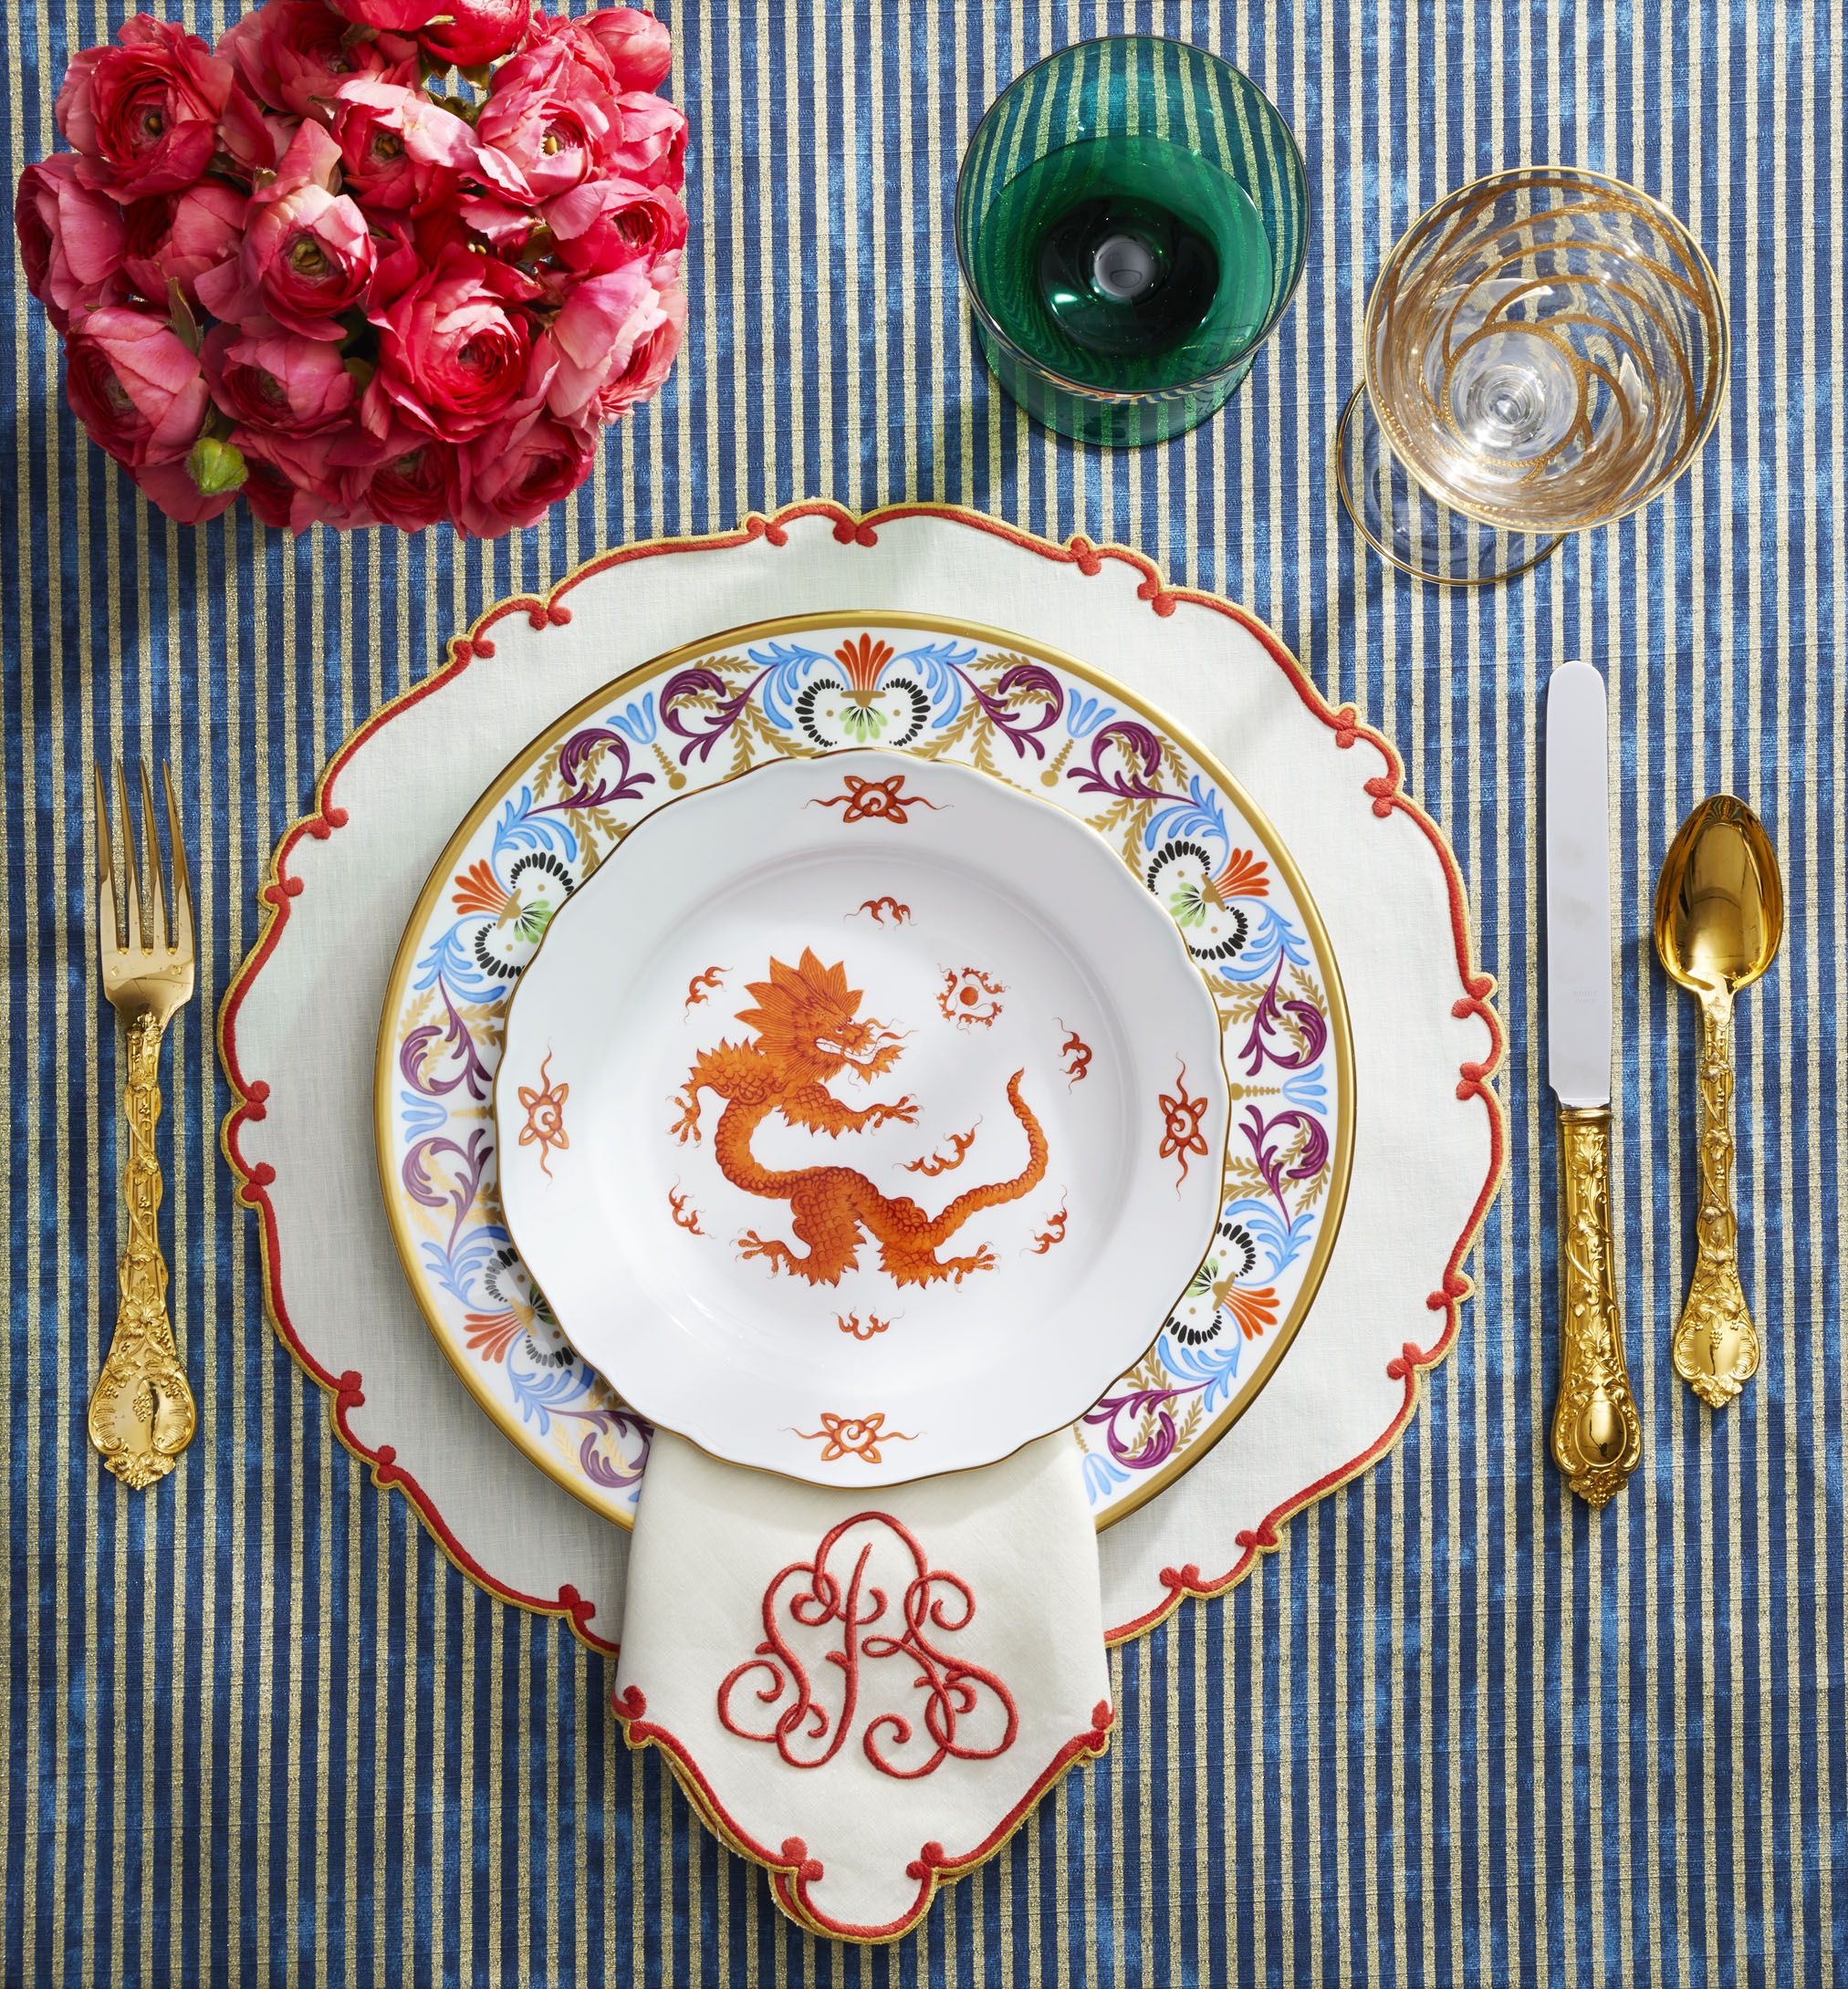 50 Best Dinner Plates 2020 - Elegant Dinnerware for Entertaining